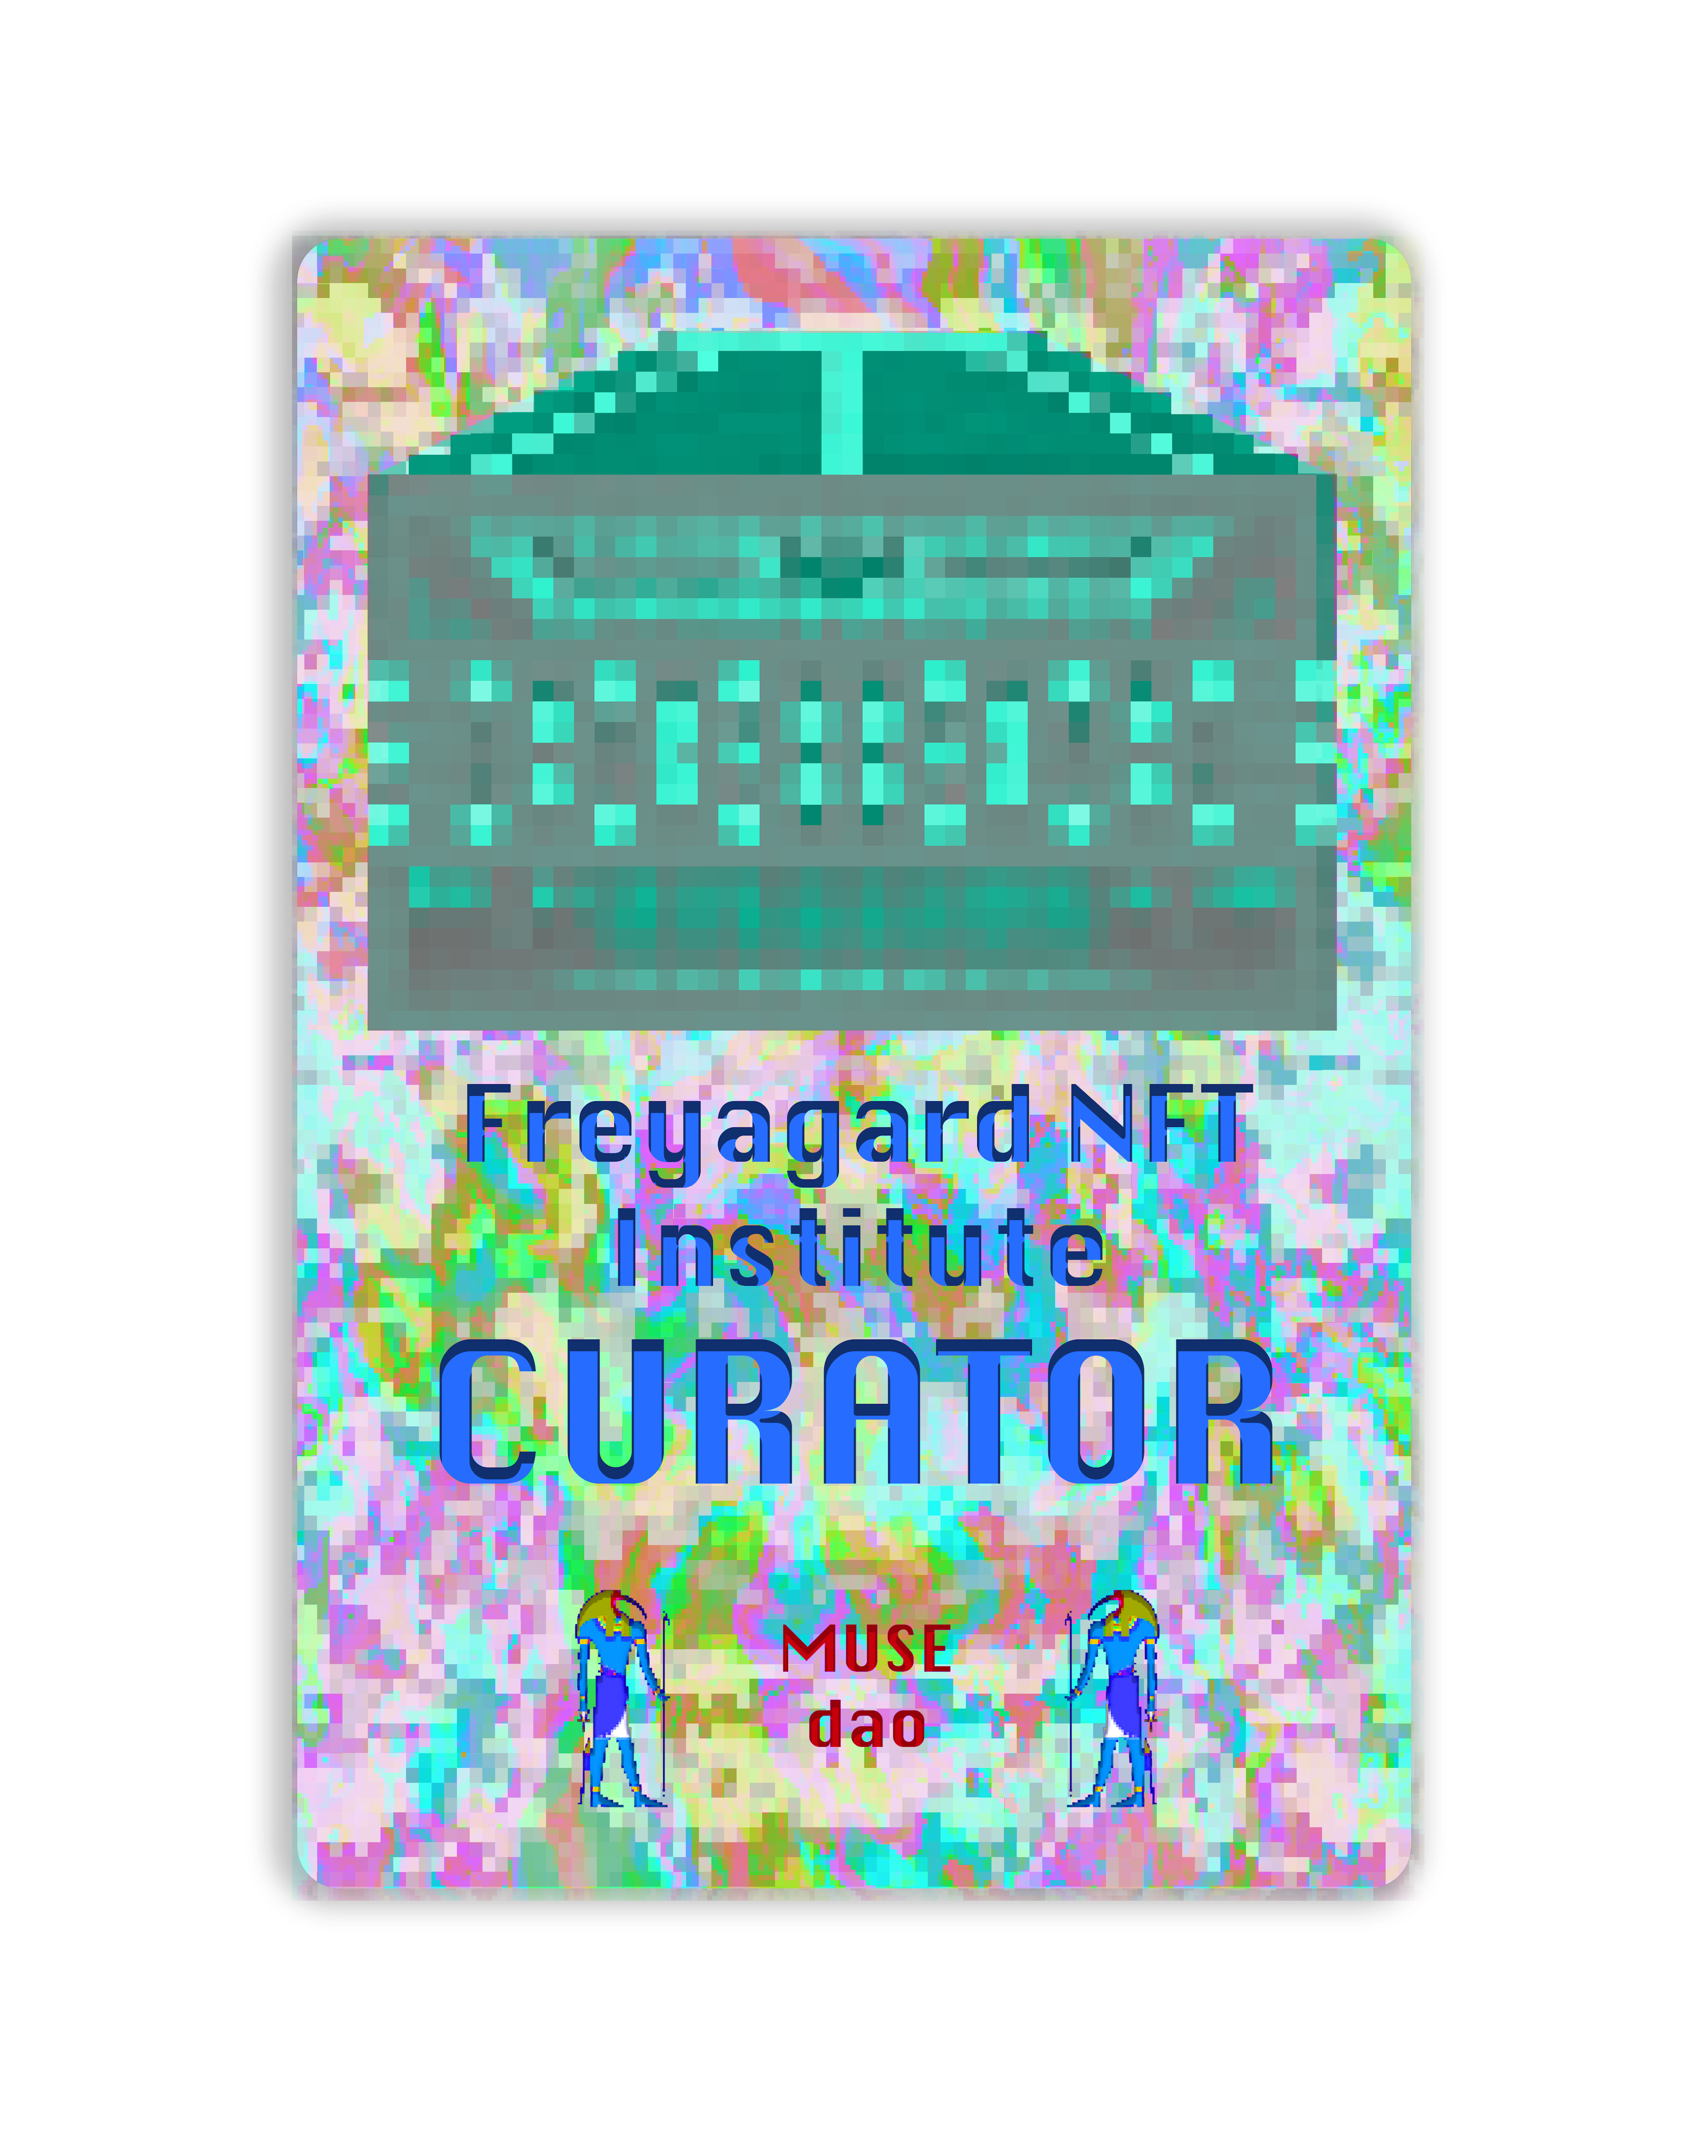 Curator token